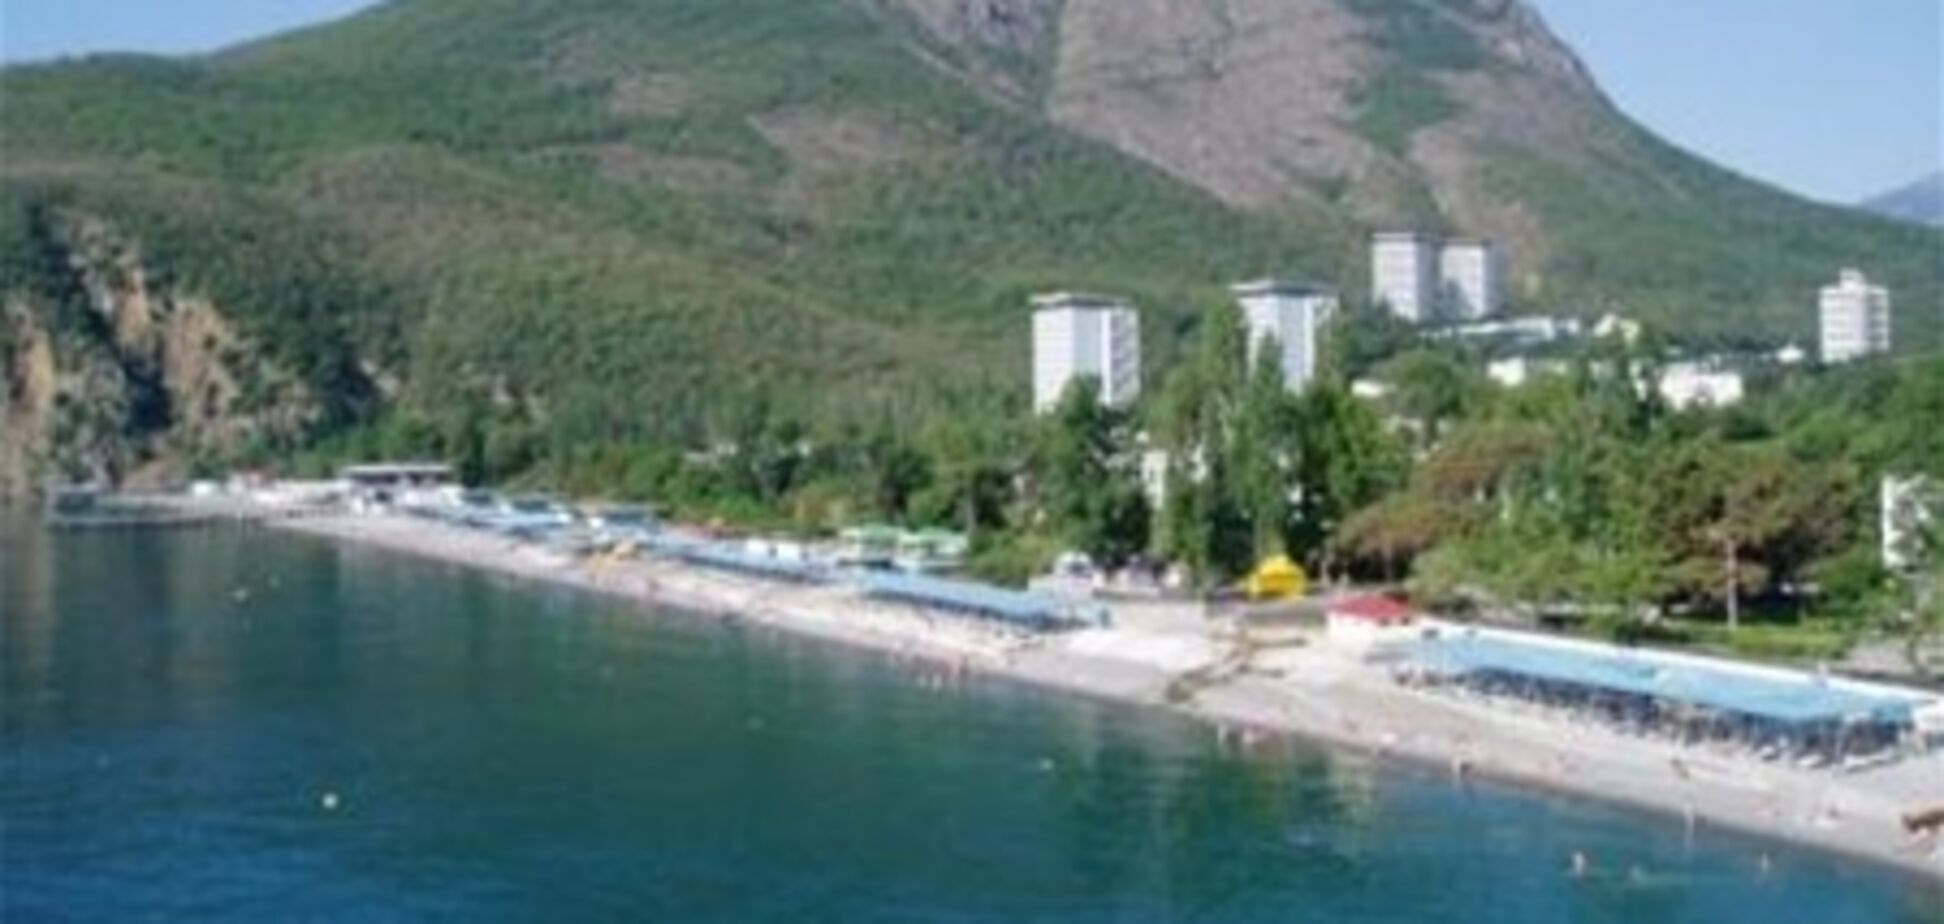 В Крыму займутся обучением хотельеров